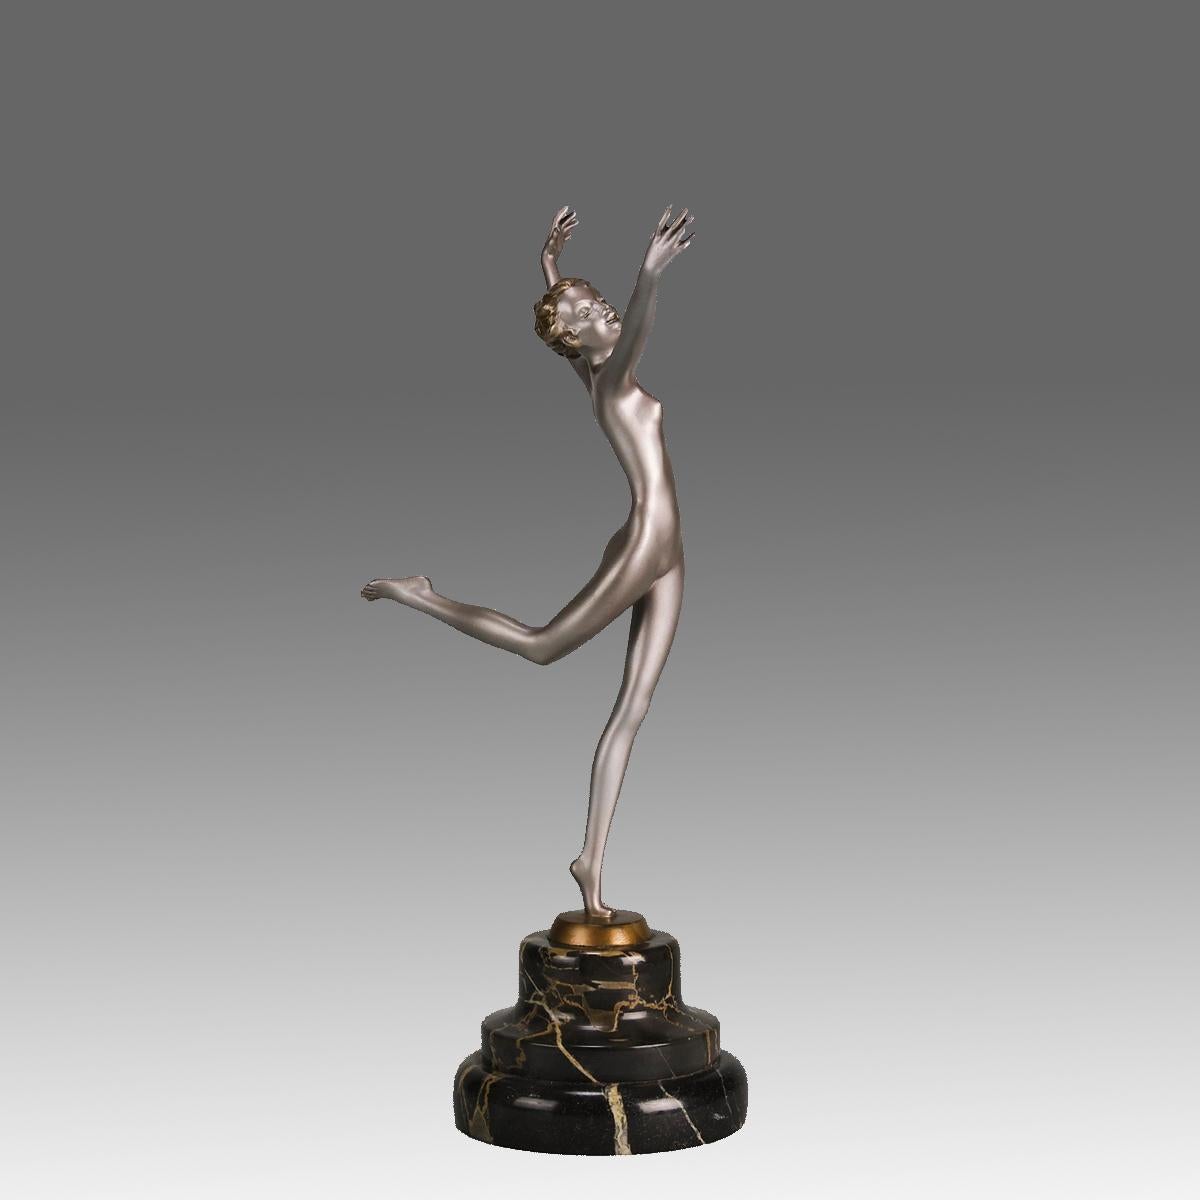 Eine energiegeladene, kalt bemalte Bronzefigur aus dem frühen 20. Jahrhundert, die eine junge, agile Schönheit in ausgewogener, tanzender Pose darstellt. Die Bronze mit ausgezeichneter Farbe und sehr feinen handziselierten Oberflächendetails steht